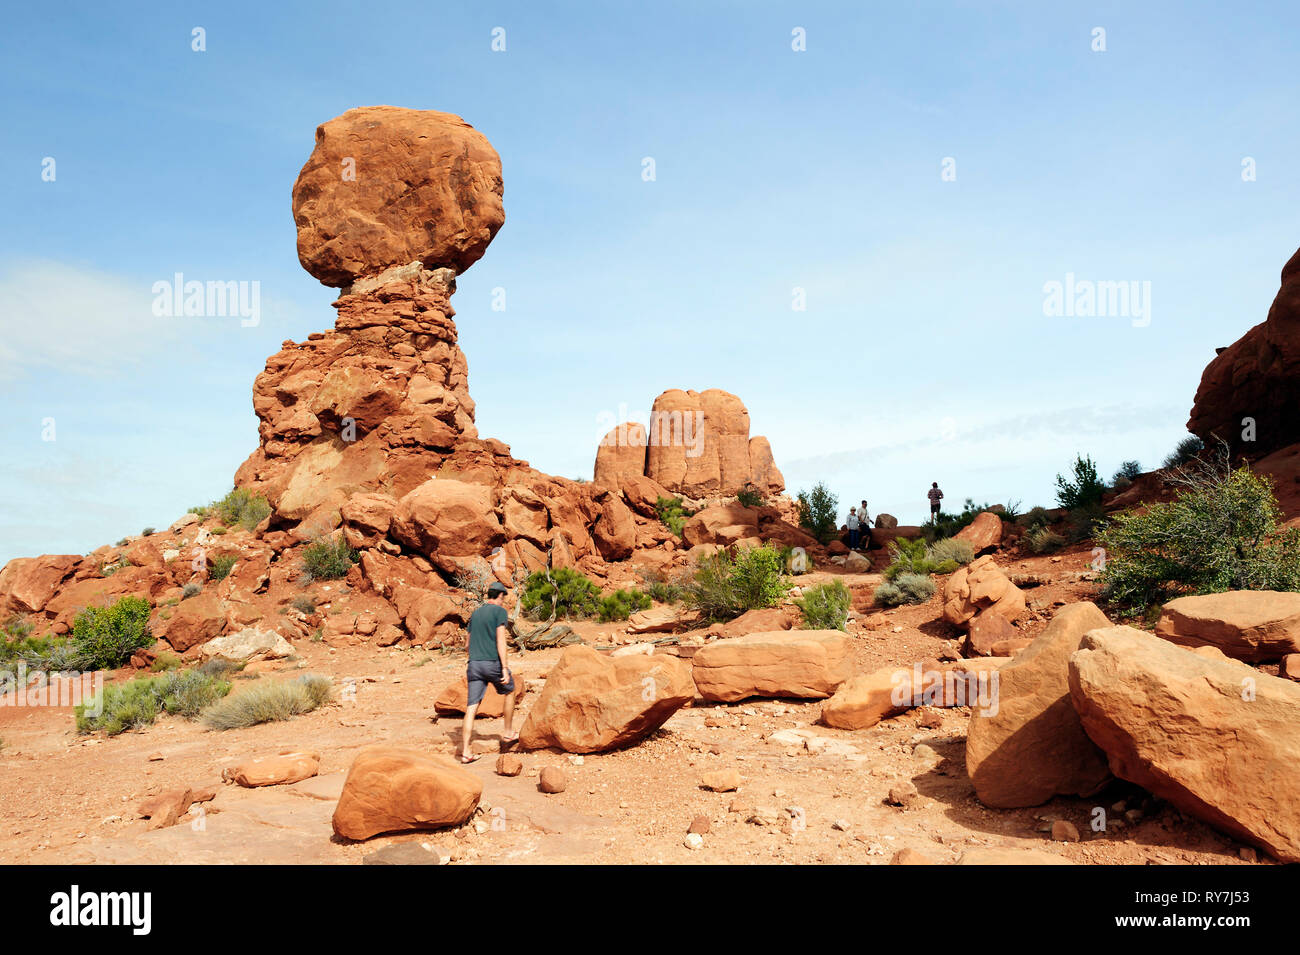 Visitatore passeggiate da un equilibrato Rock, una famosa formazione rocciosa Arches National Park nello Utah, Stati Uniti d'America. Foto Stock